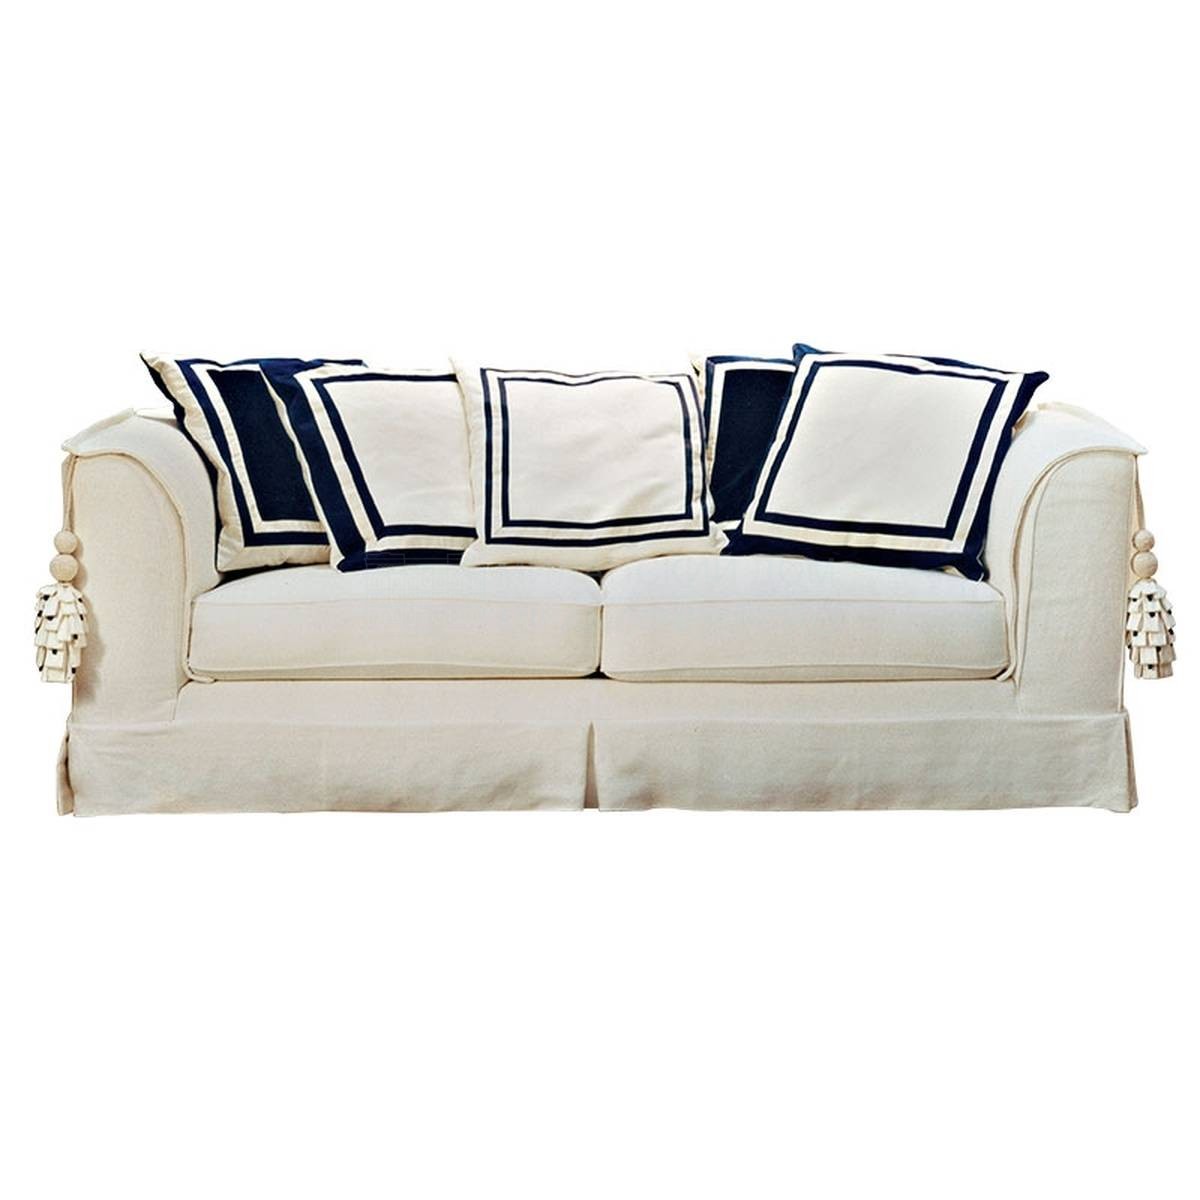 Прямой диван Blucina sofa из Италии фабрики SOFTHOUSE